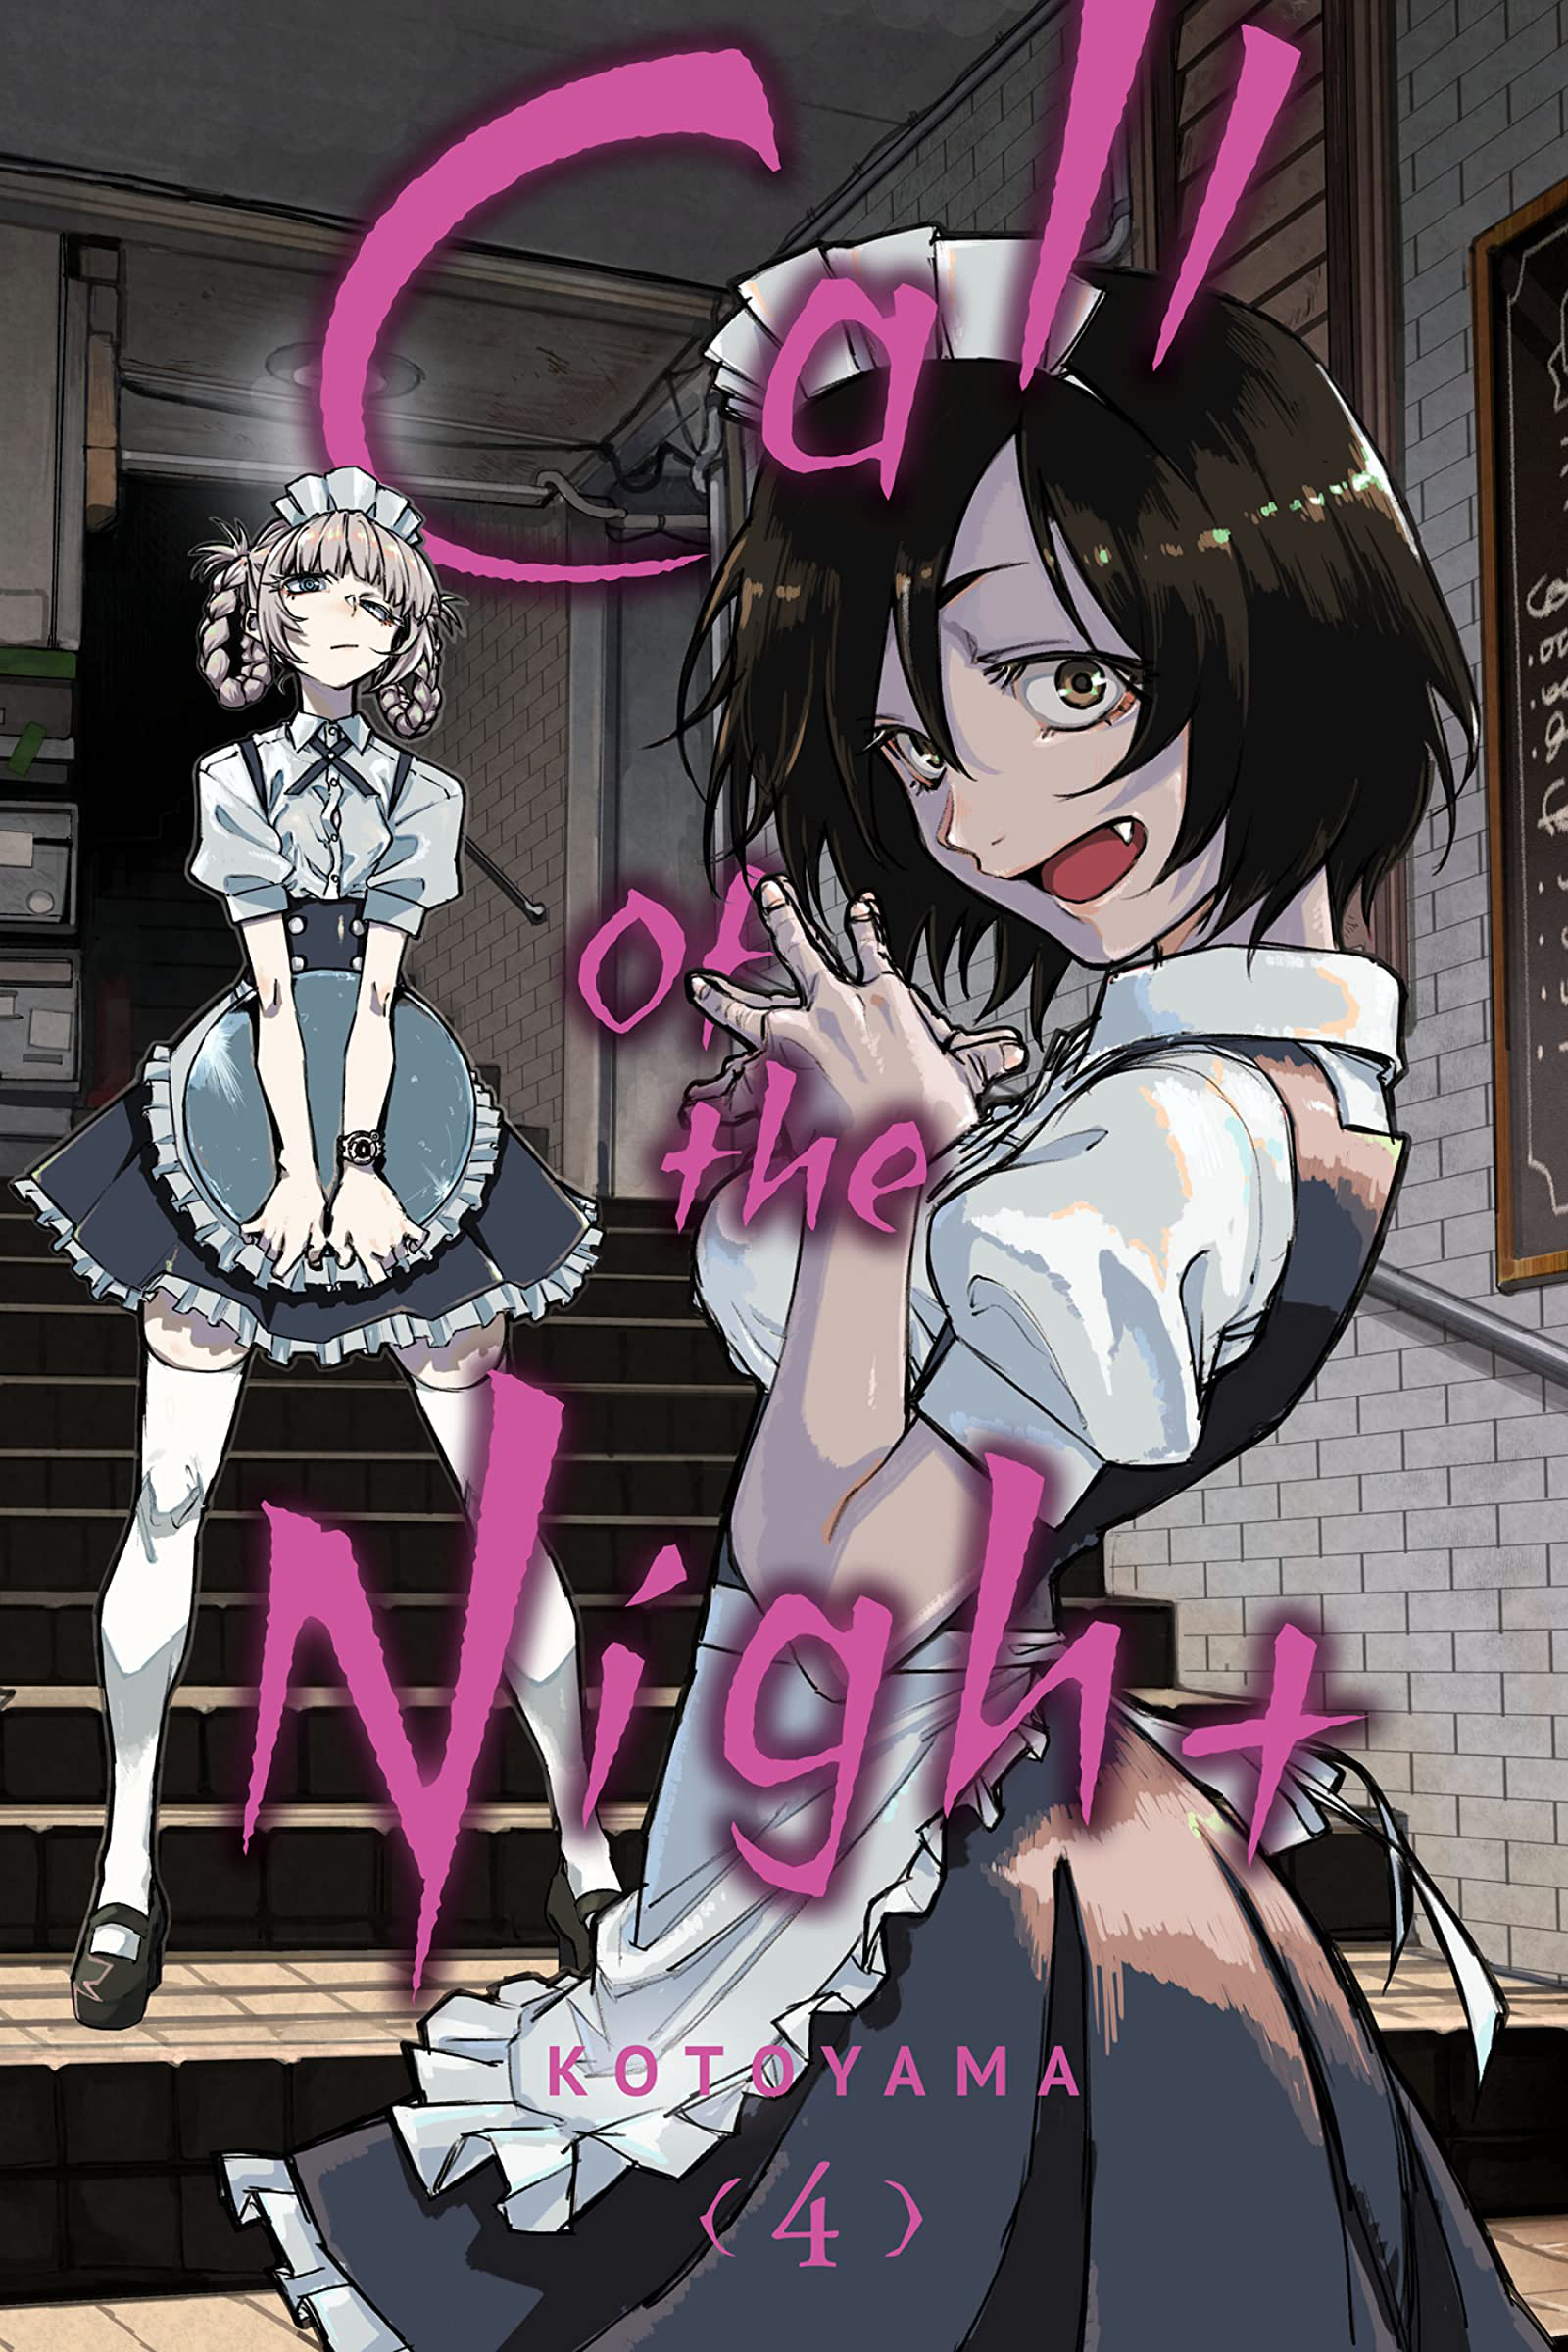 Yofukashi no Uta (Call of the Night) Vol 14